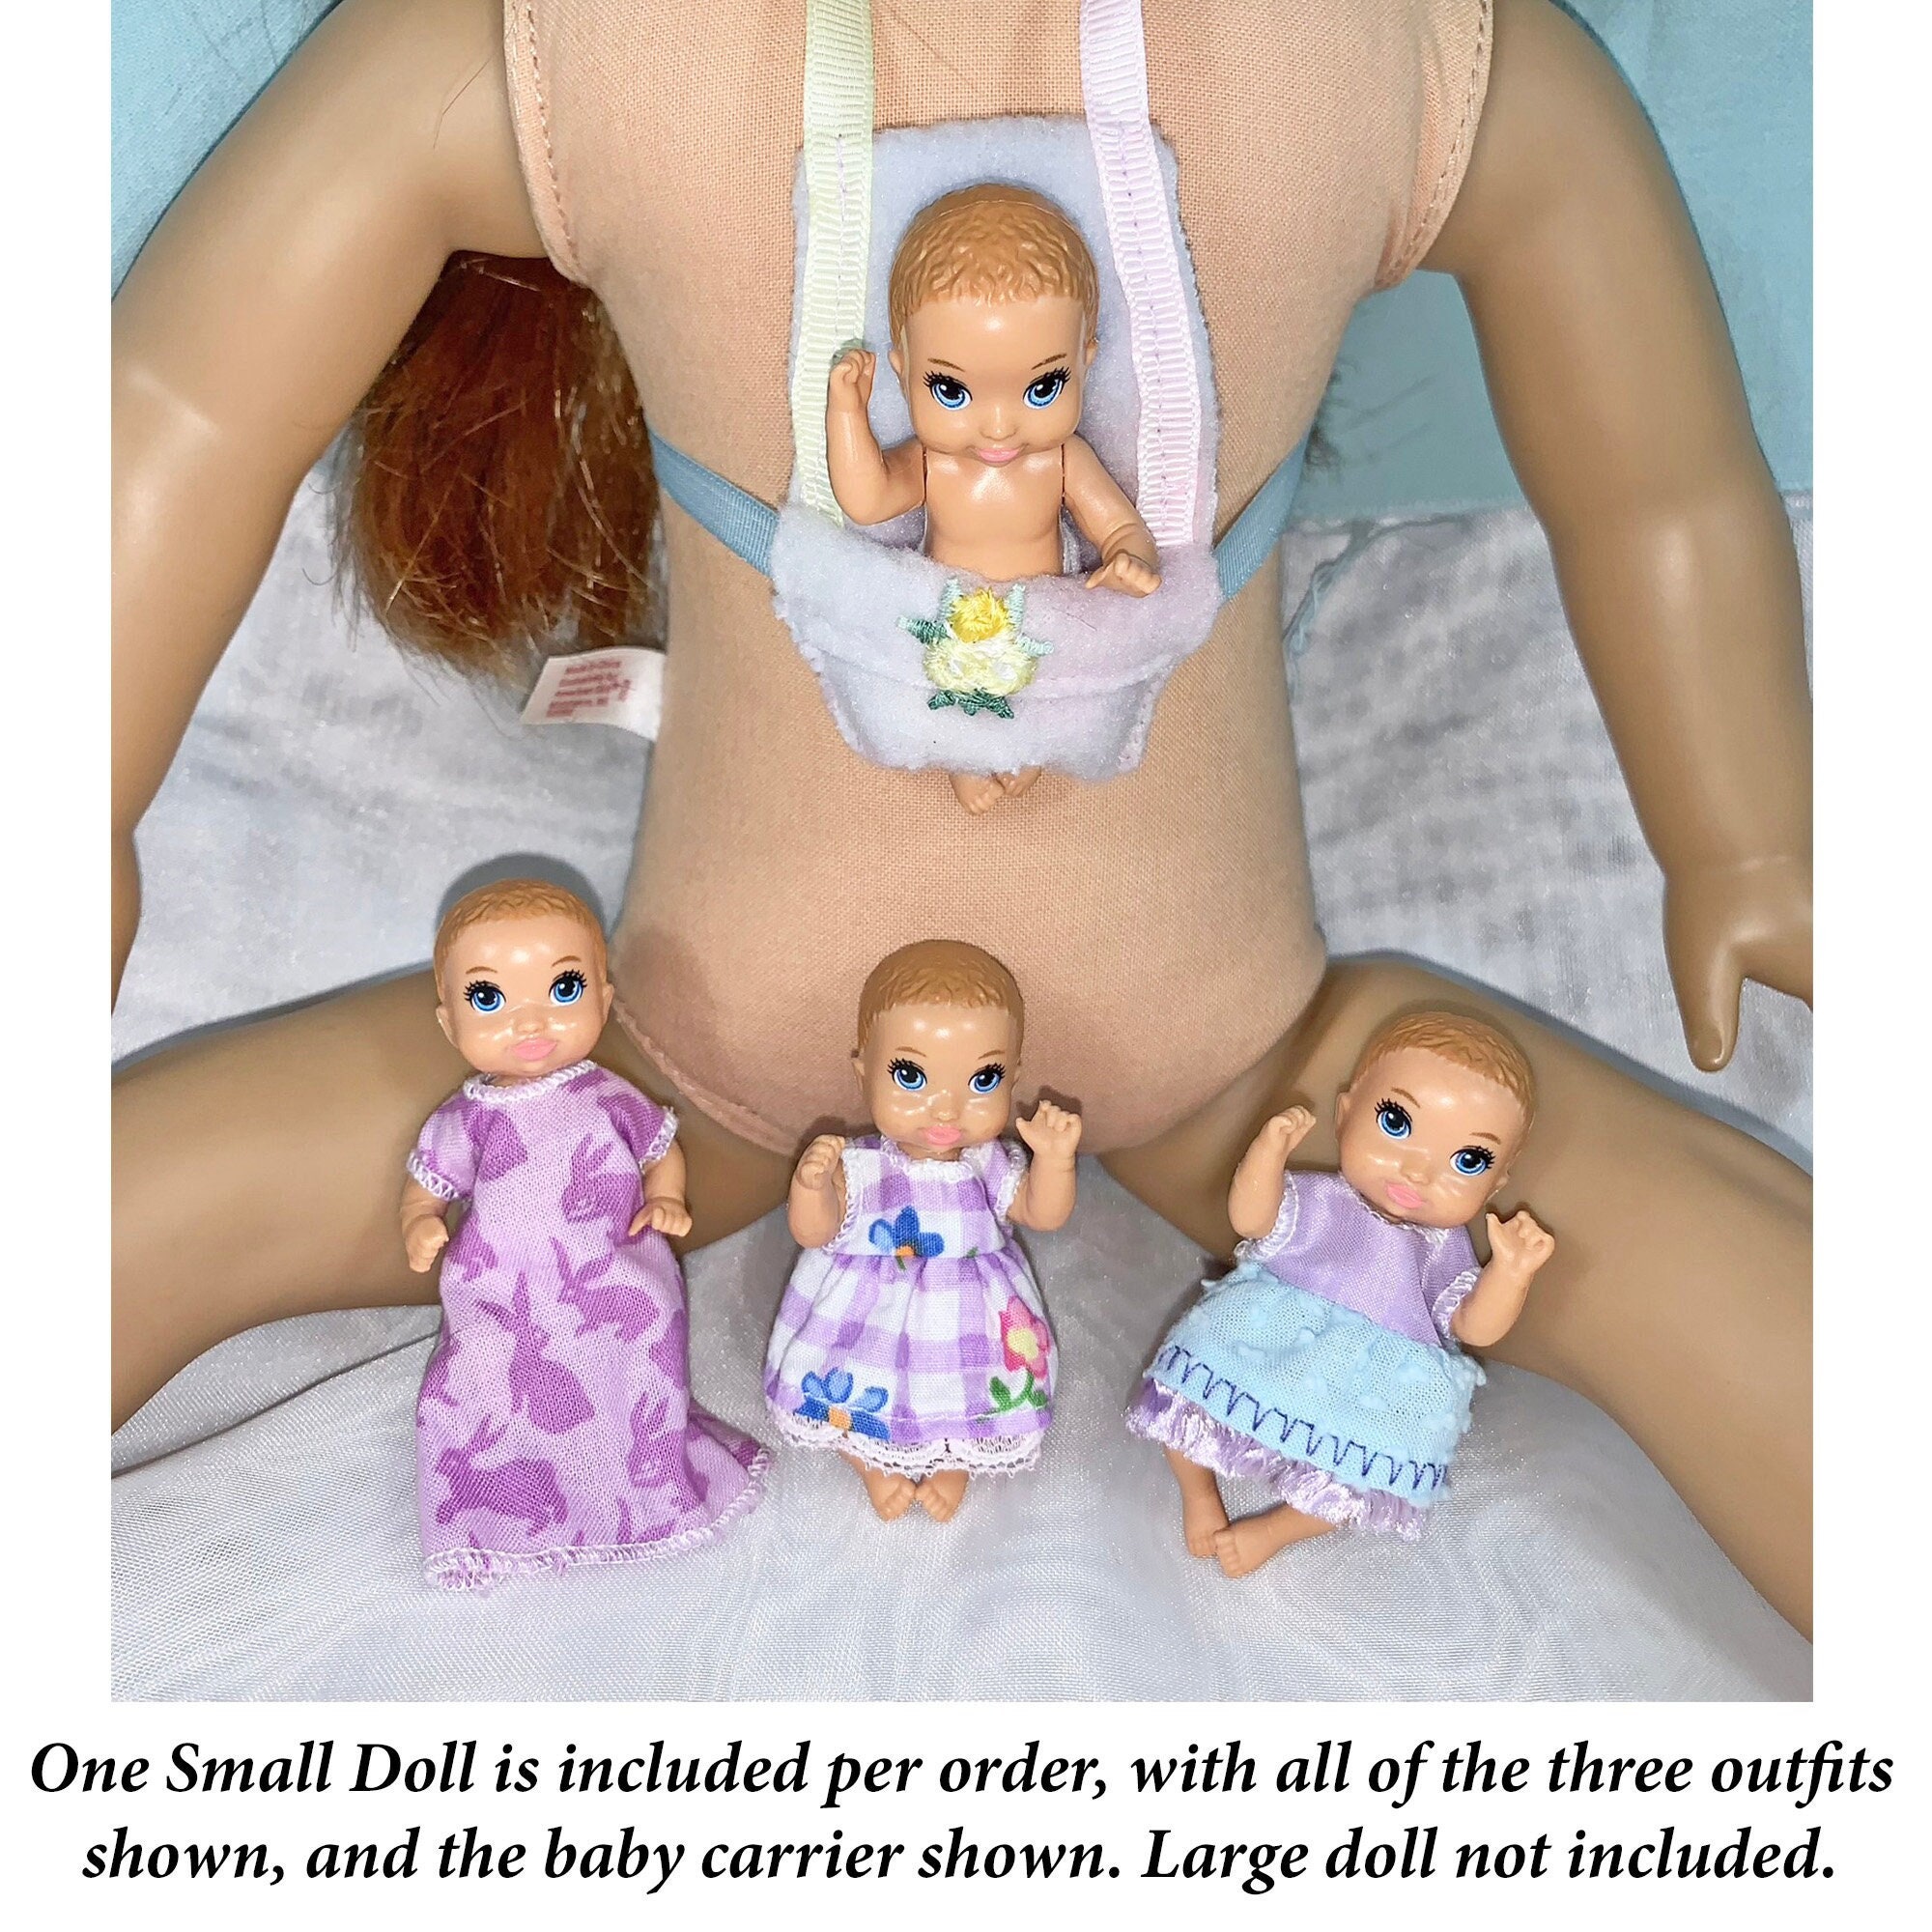 TUTO Lit de bébé pour Barbie - DIY Baby's bed for doll 